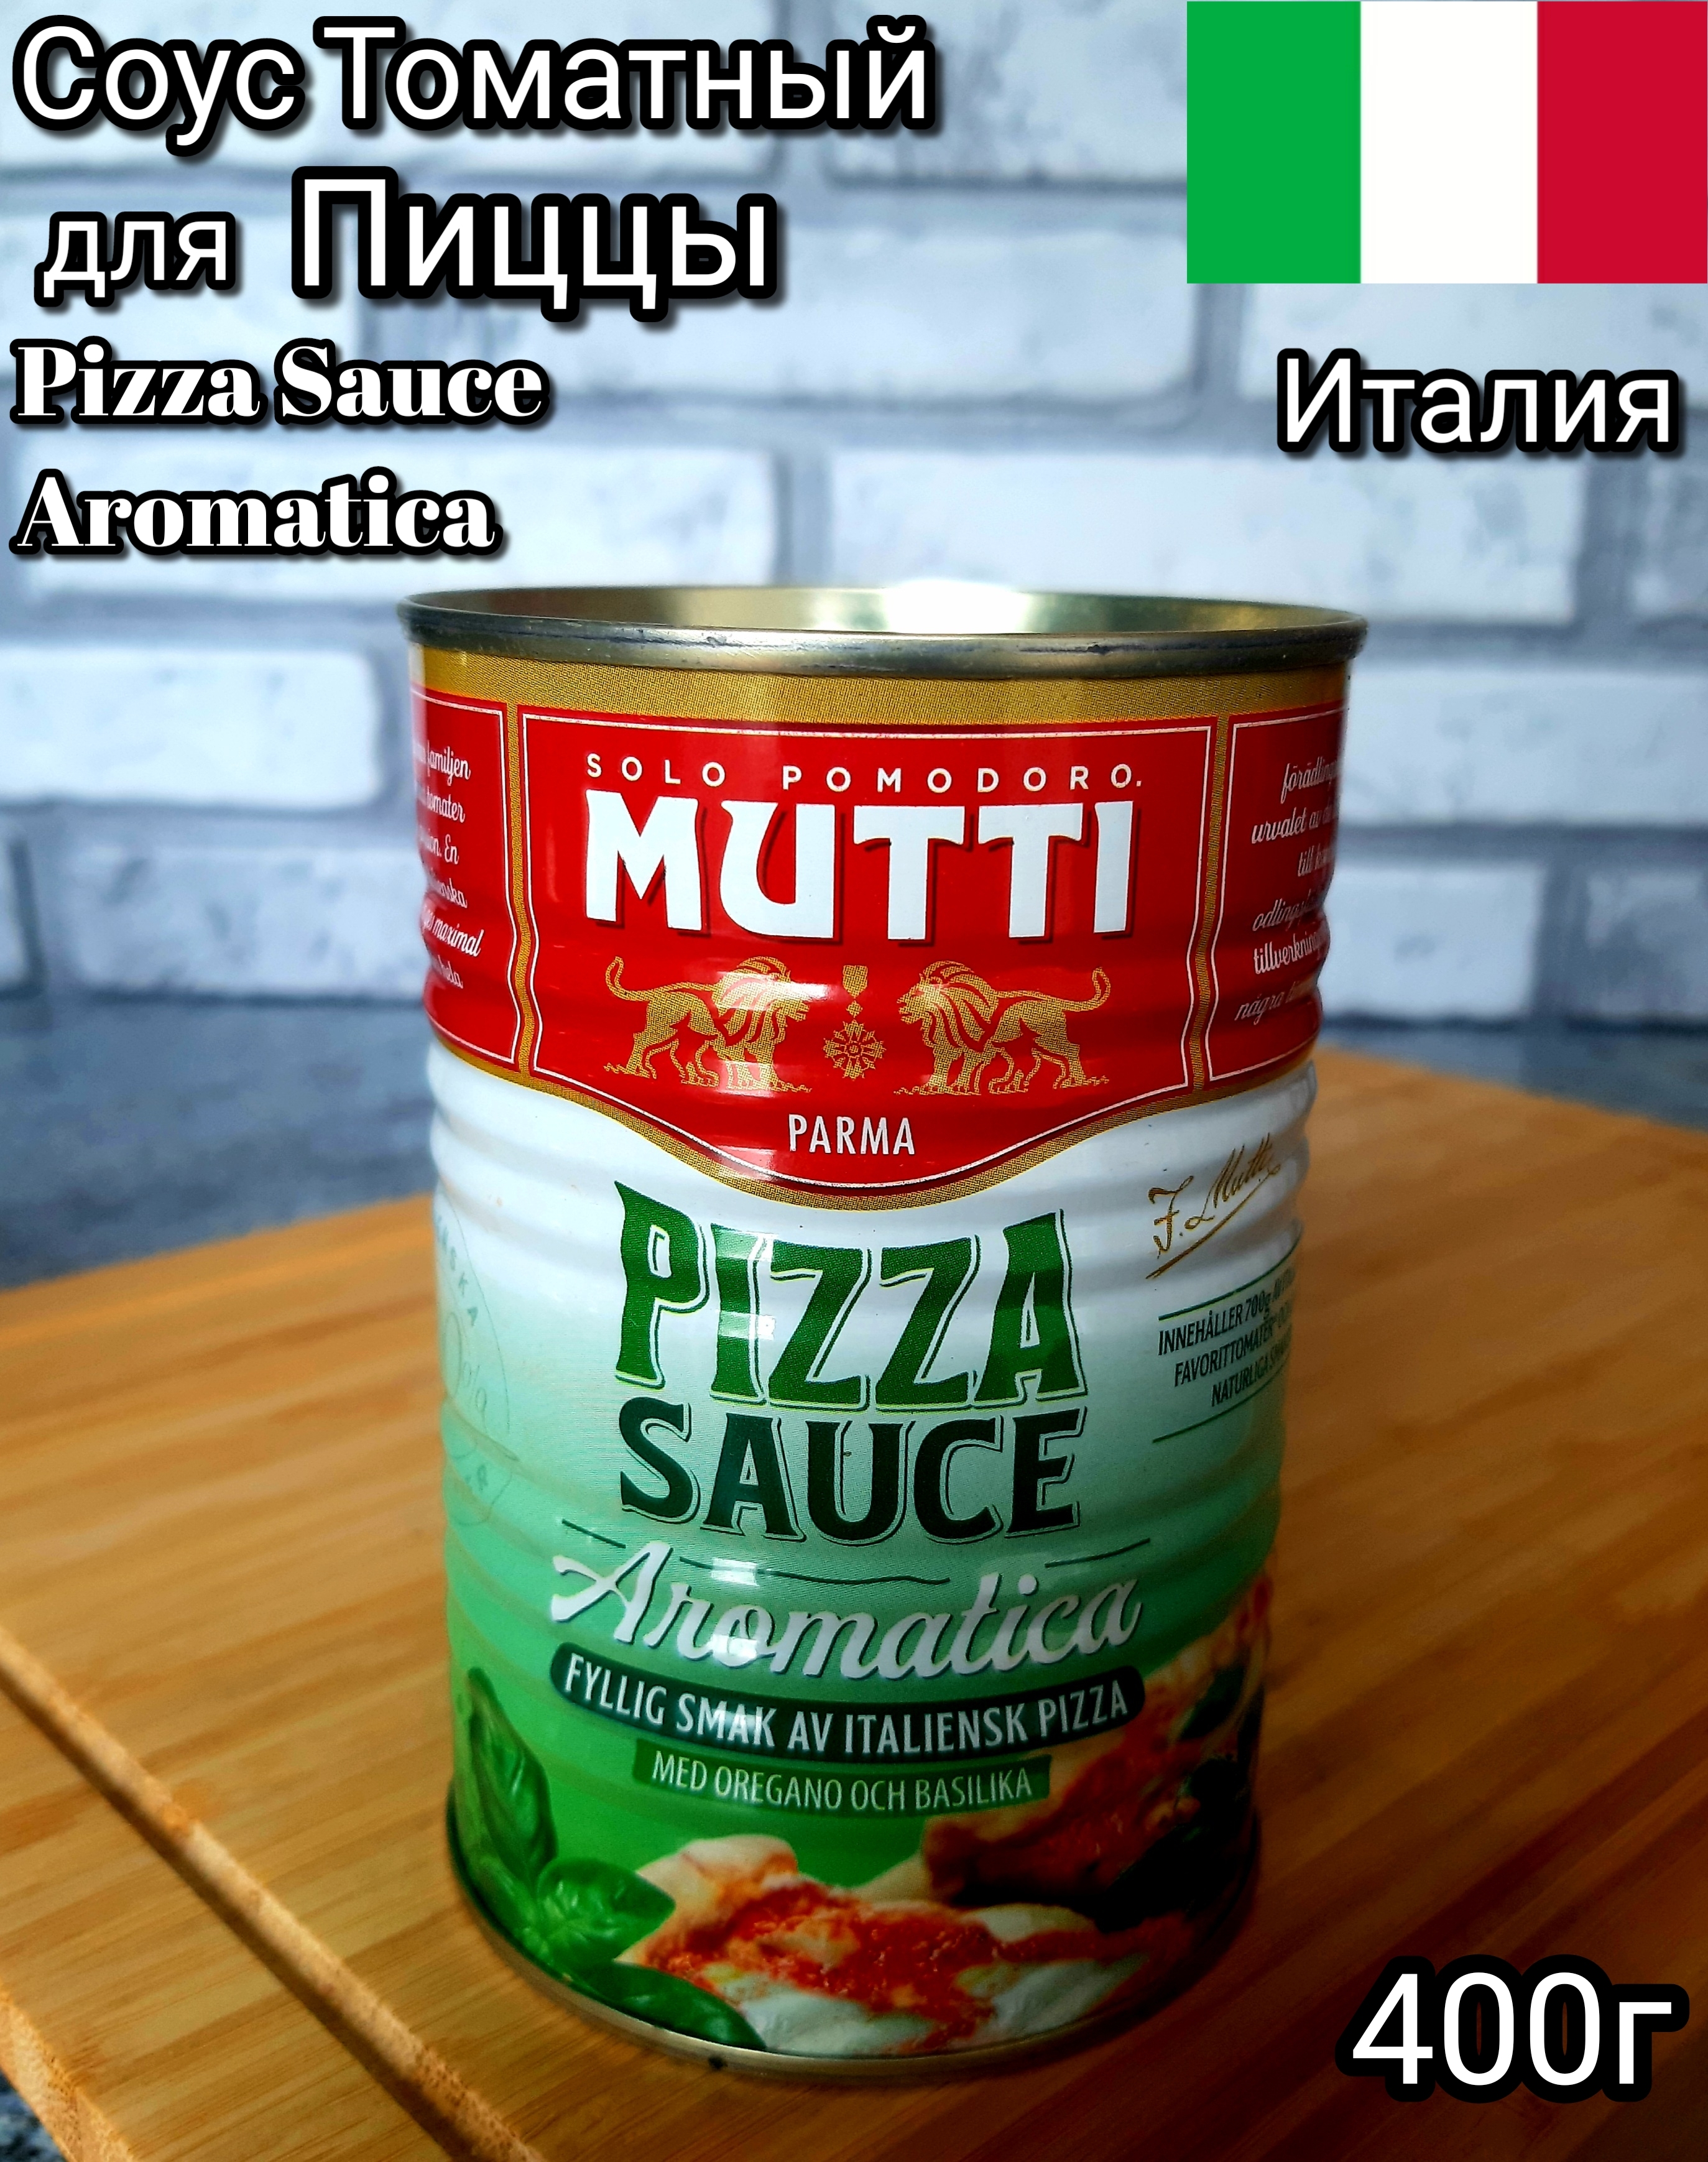 томатный соус для пиццы mutti состав фото 17